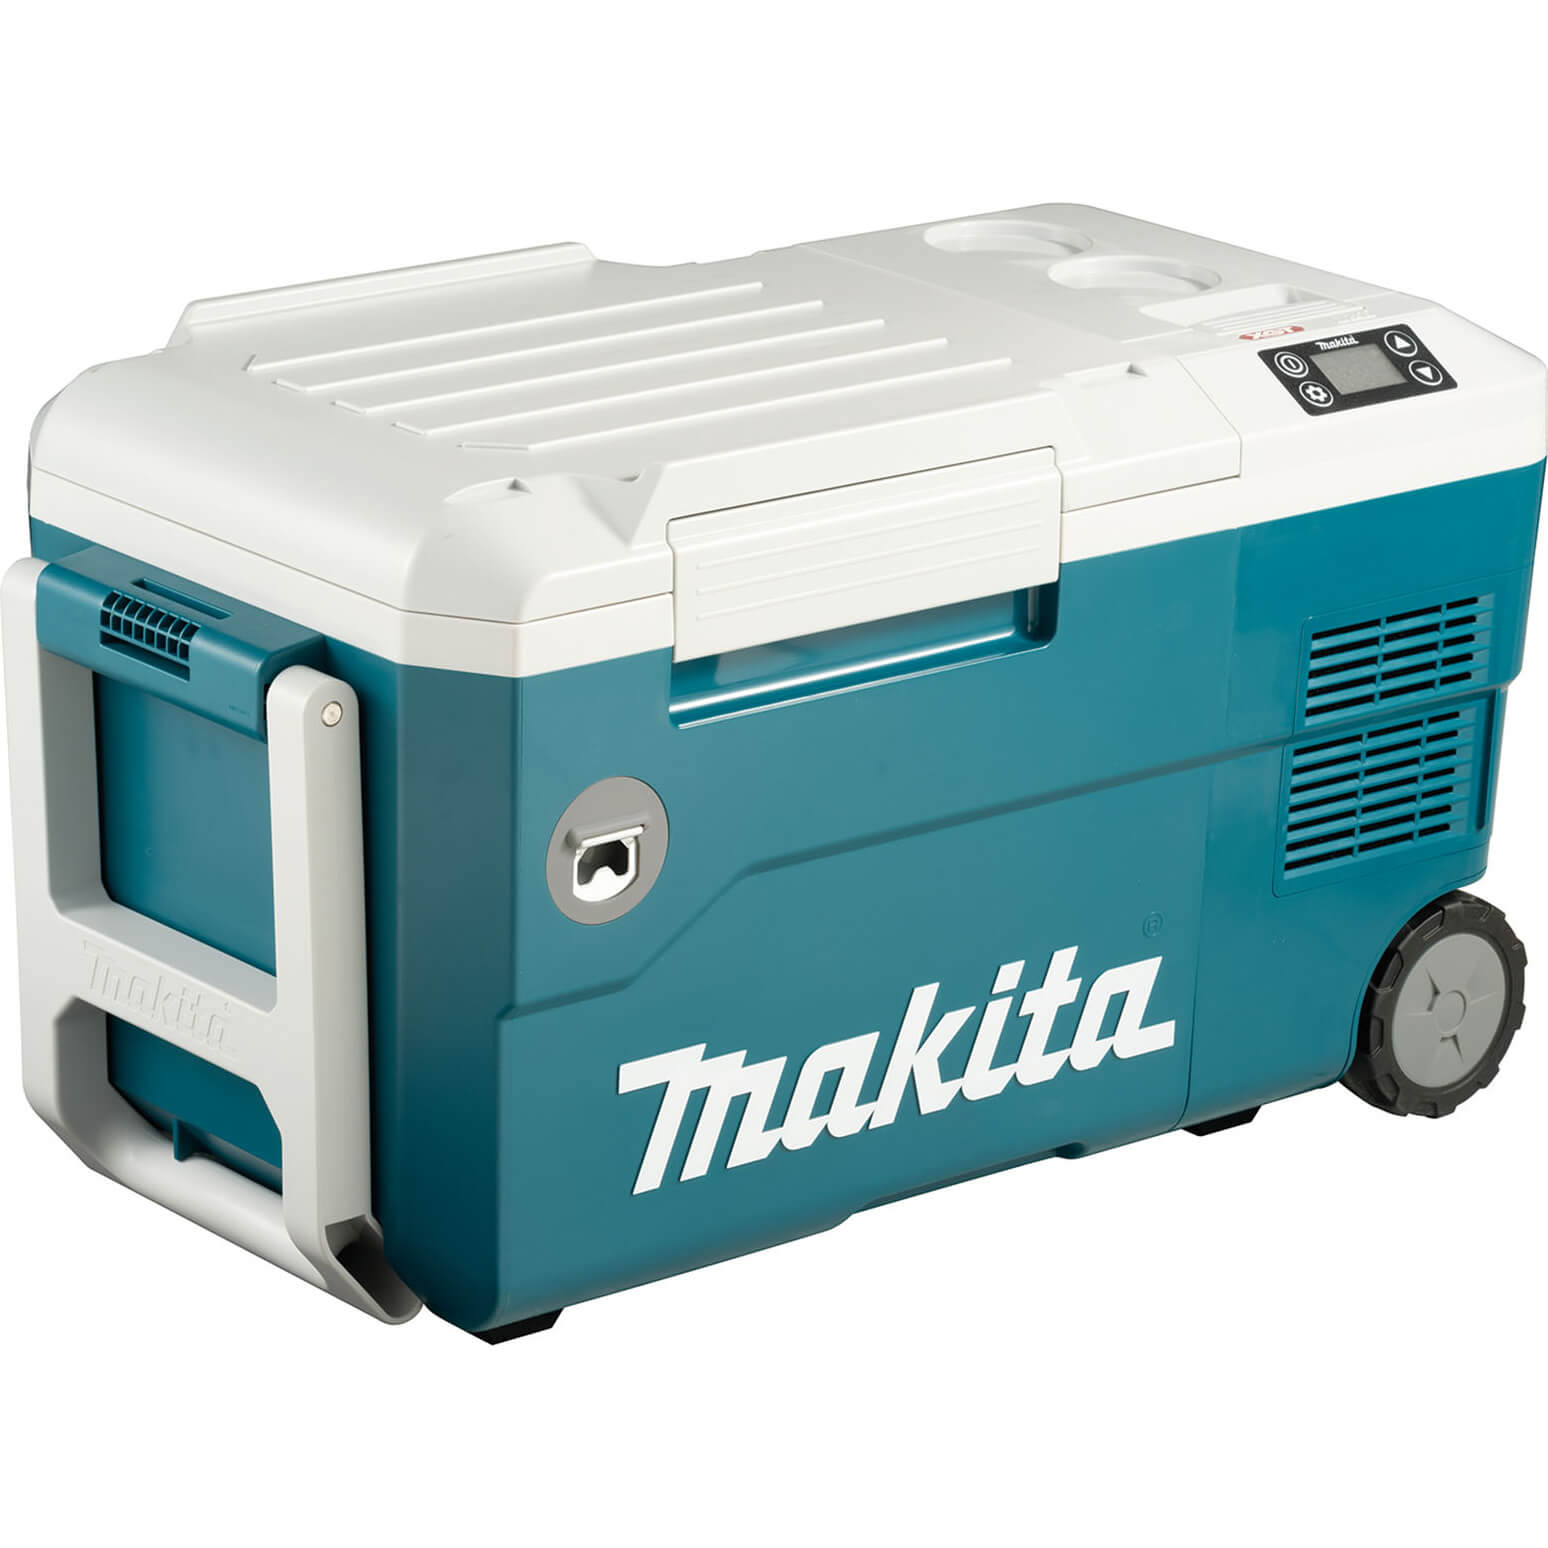 Makita CW001G 40v Max XGT Cordless Drinks Cooler and Warmer Box No Batteries No Charger